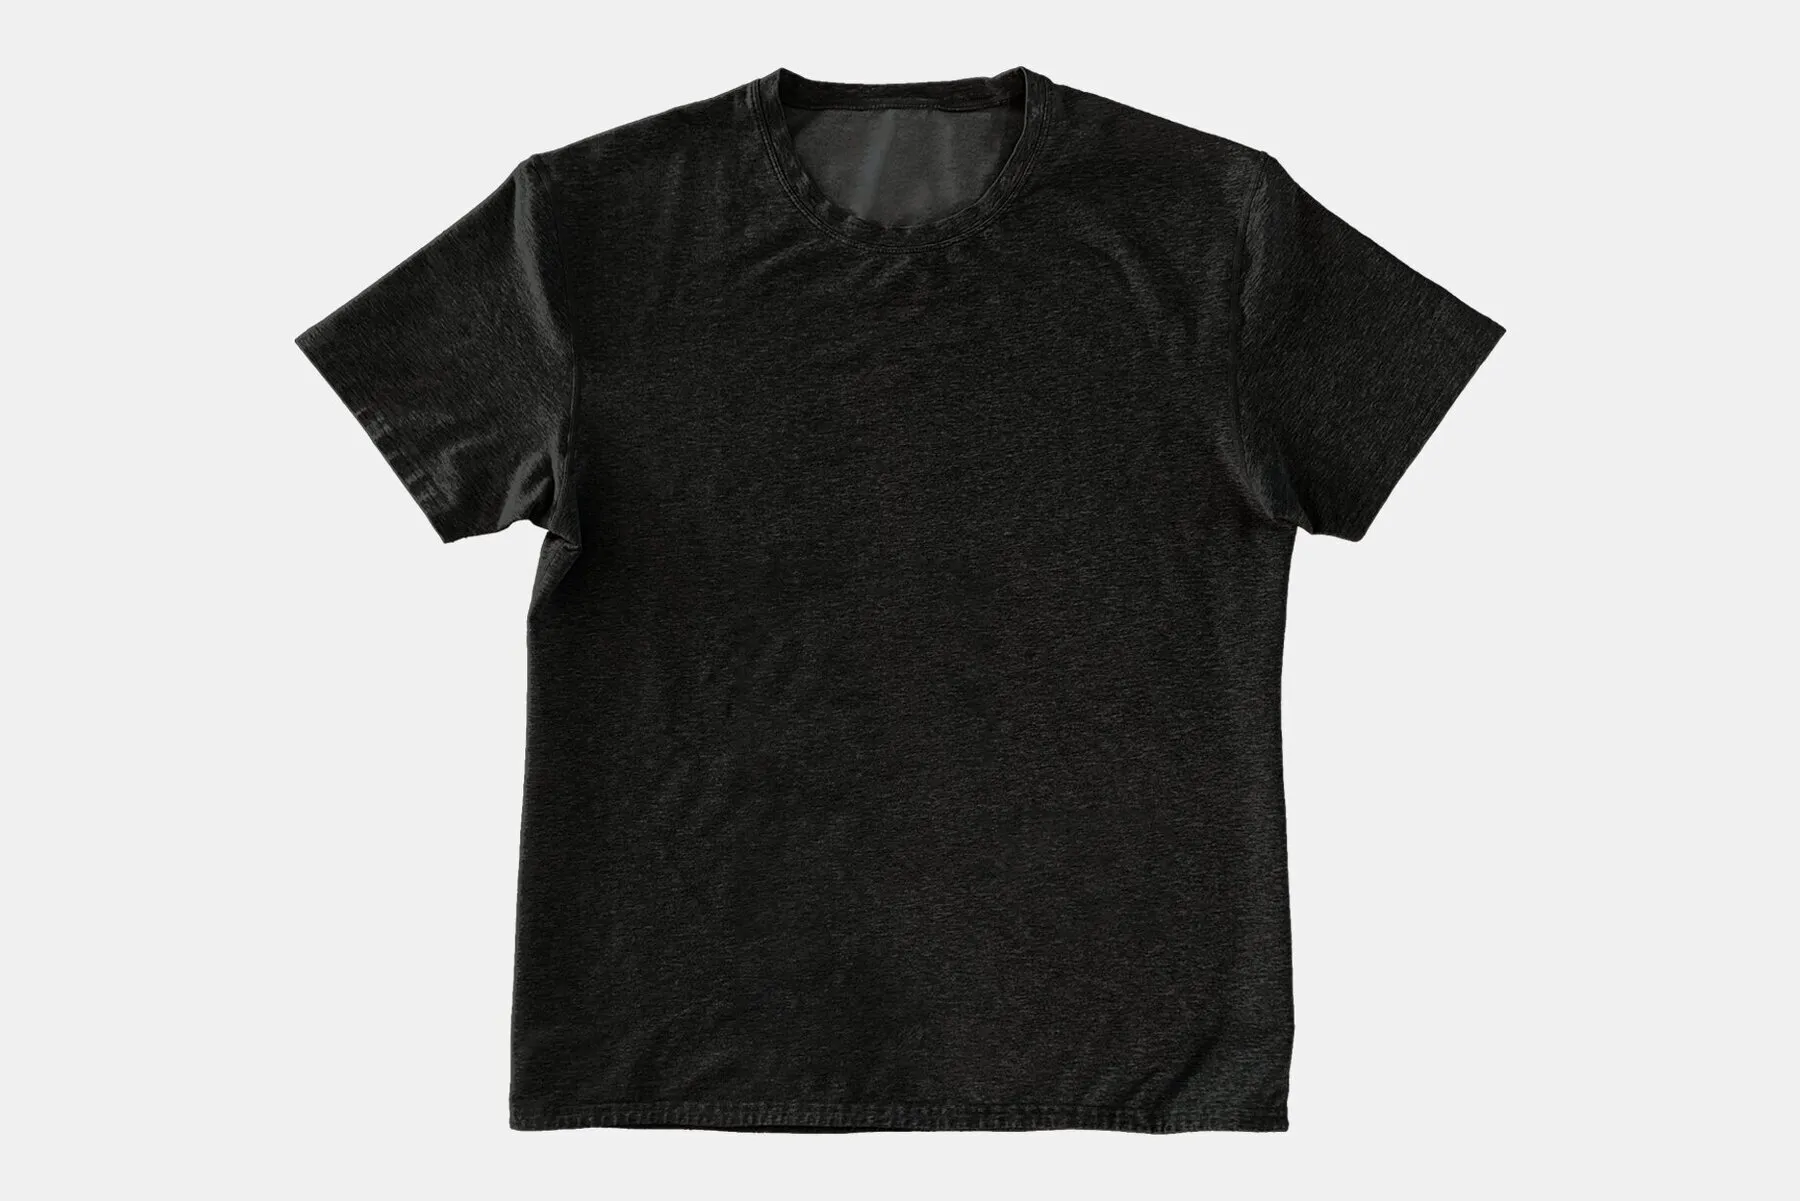 BYLT T-Shirt Mockup